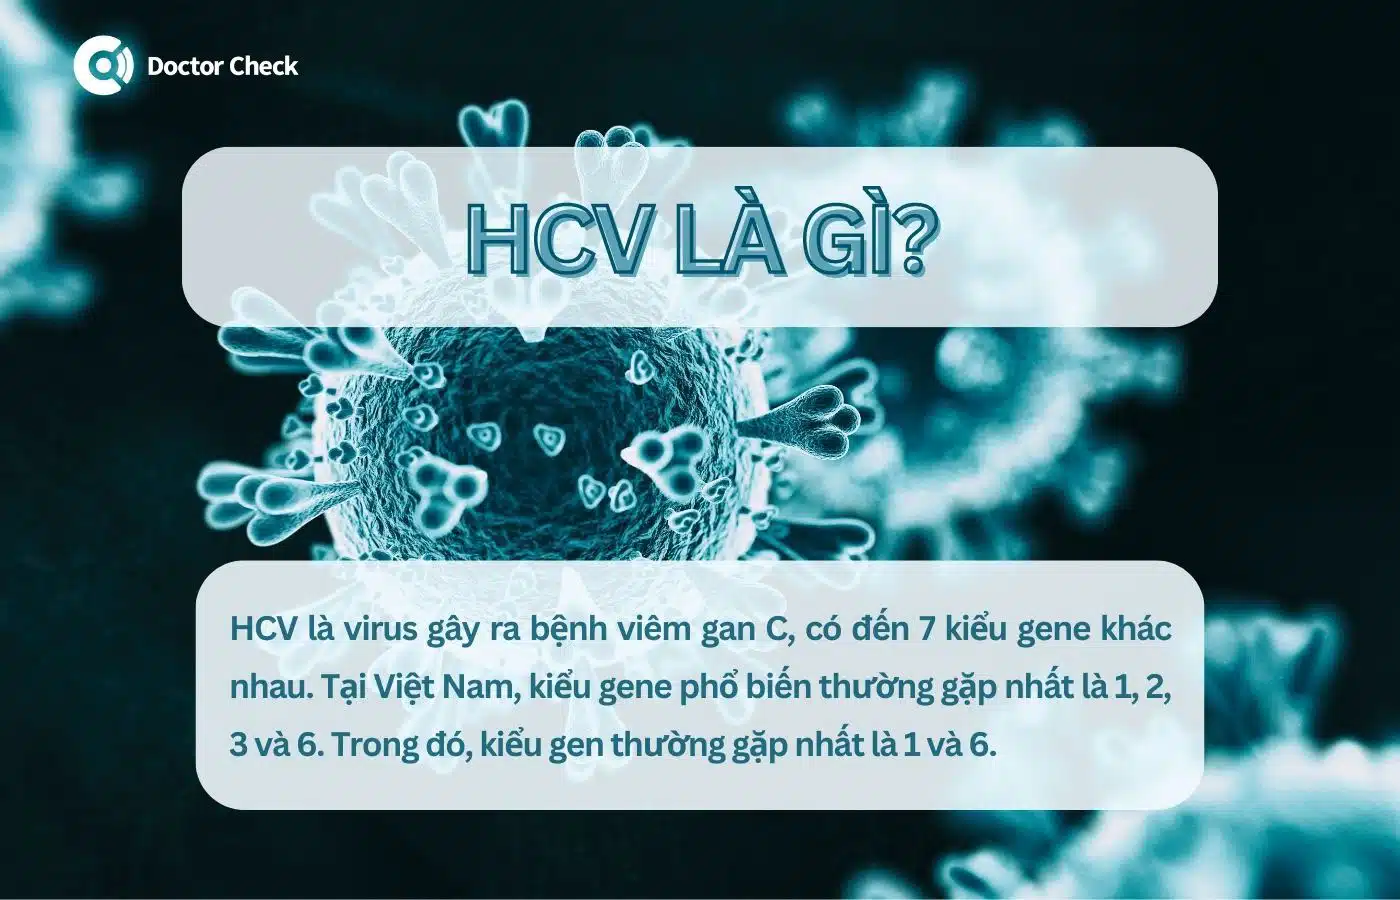 HCV là gì?